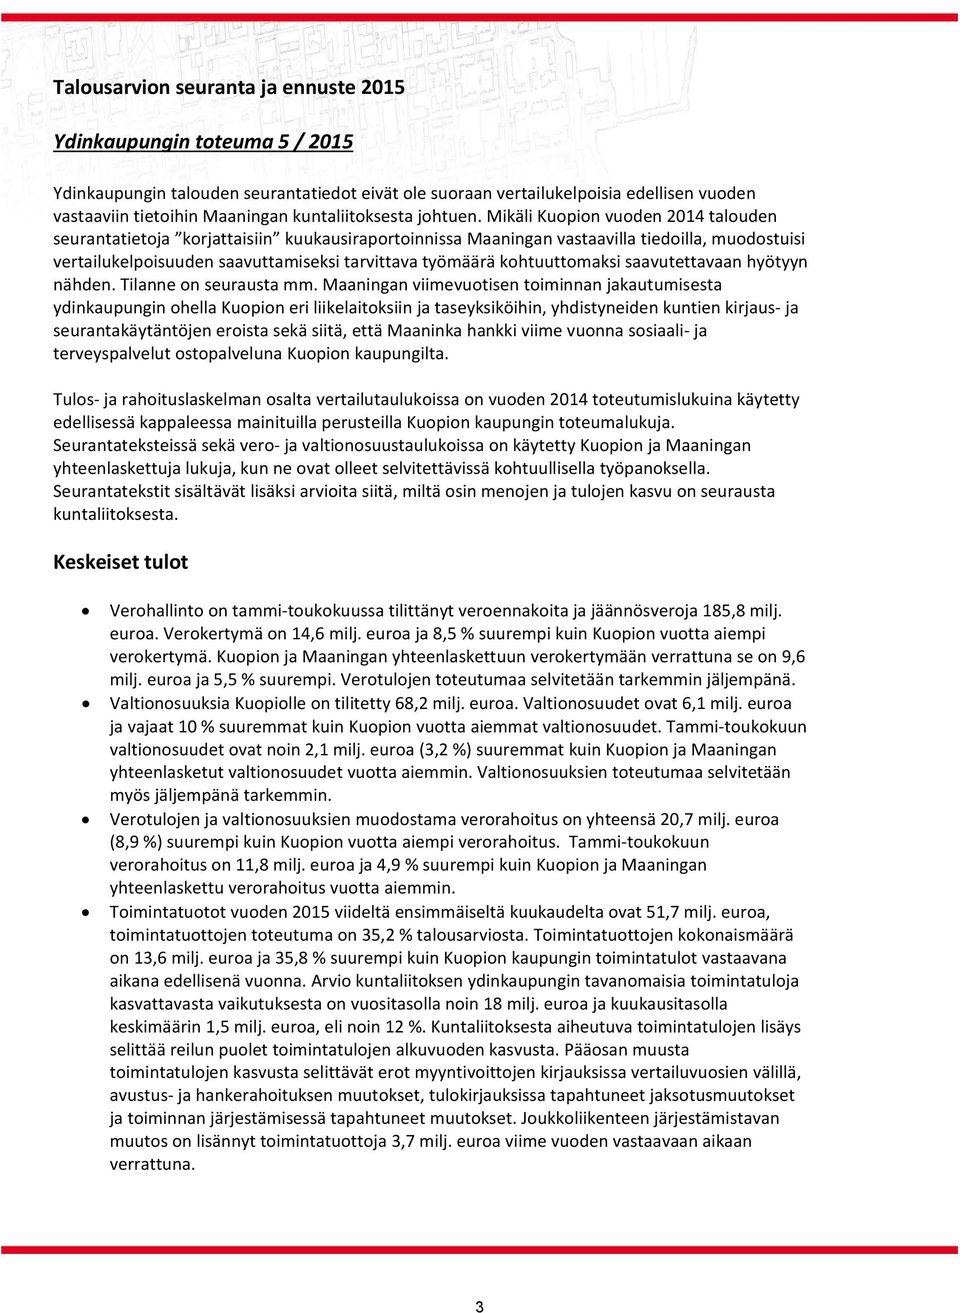 Mikäli Kuopion vuoden 2014 talouden seurantatietoja korjattaisiin kuukausiraportoinnissa Maaningan vastaavilla tiedoilla, muodostuisi vertailukelpoisuuden saavuttamiseksi tarvittava työmäärä